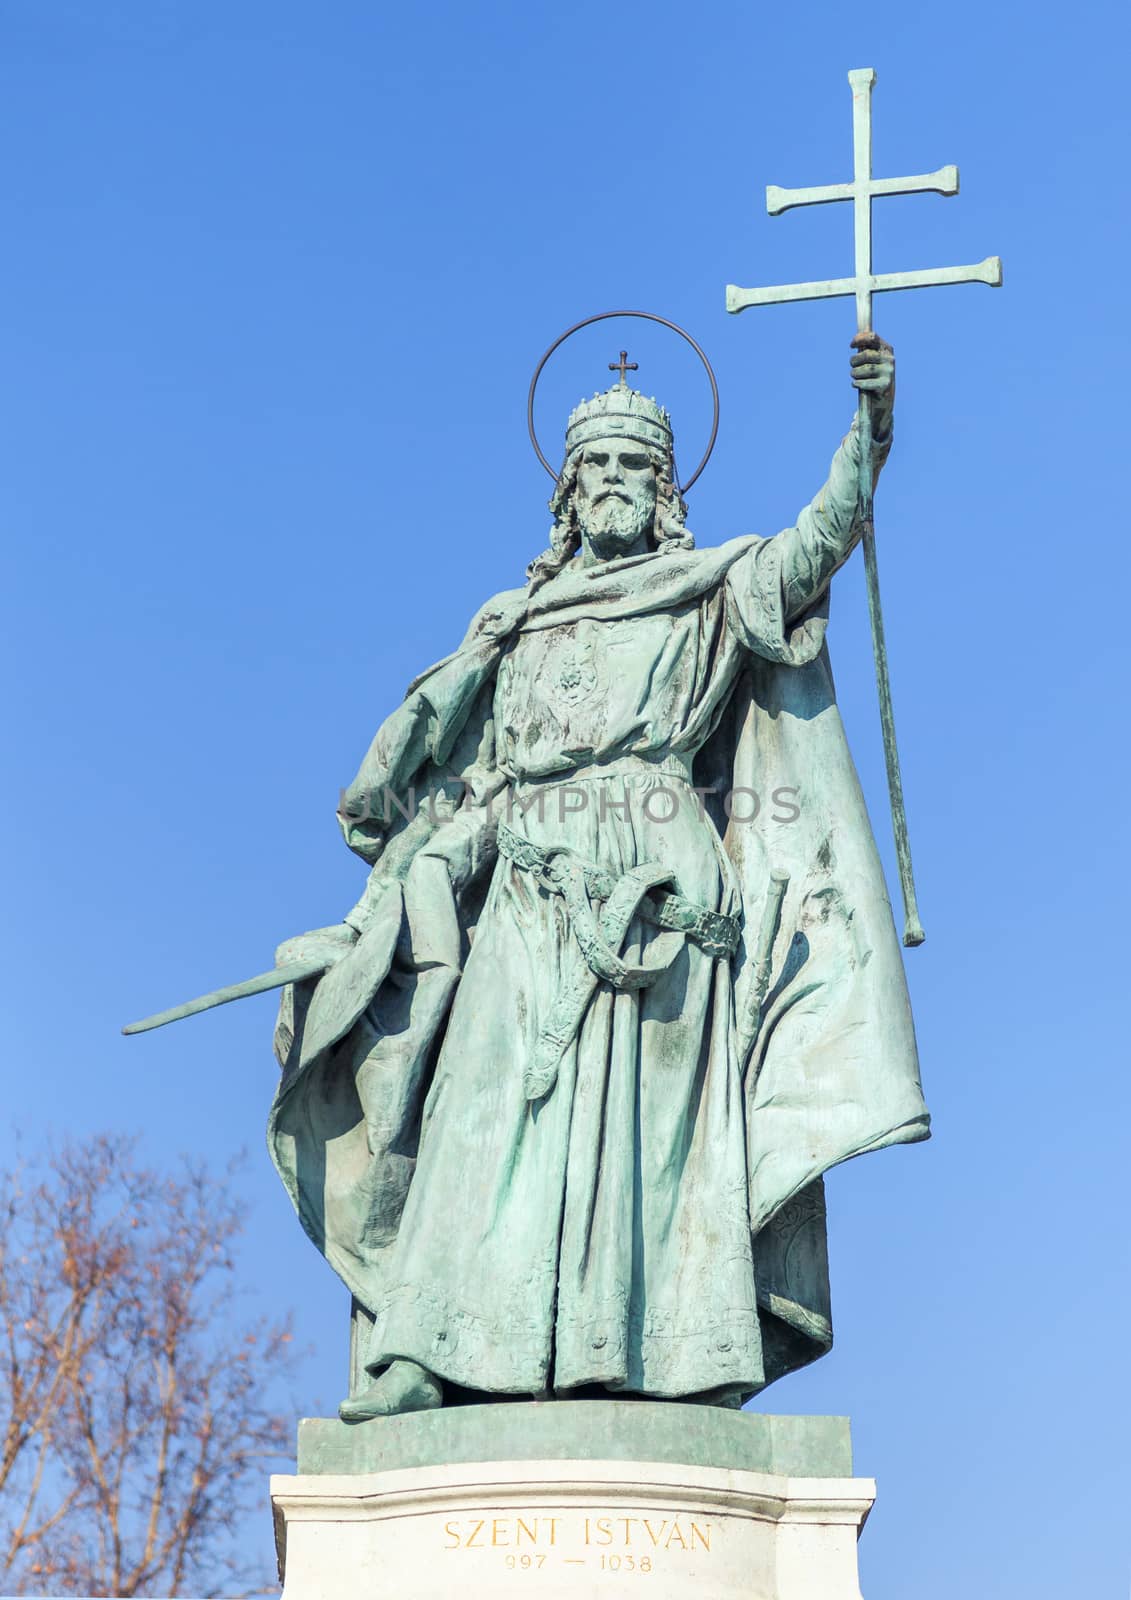 Budapest, HUNGARY - FEBRUARY 15, 2015 - Statue of saint Istvan in Hero's Square, Budapest, Hungary